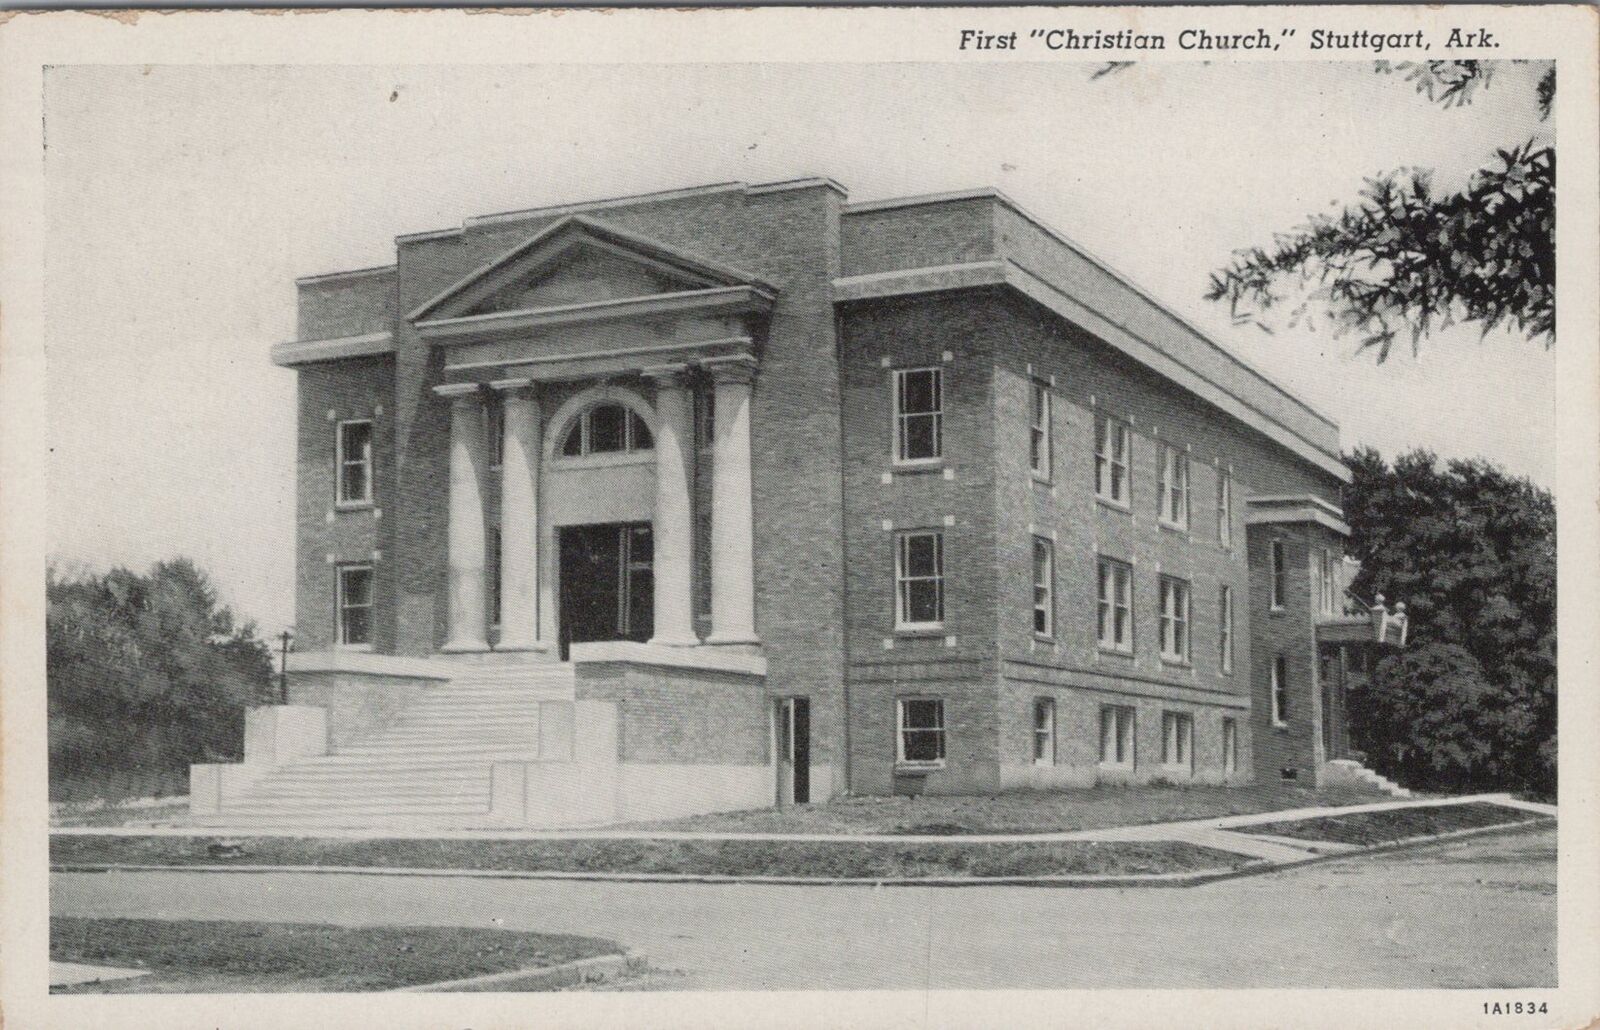 First Christian Church, Stuttgart, Arkansas Stuttgart 1947 Postcard